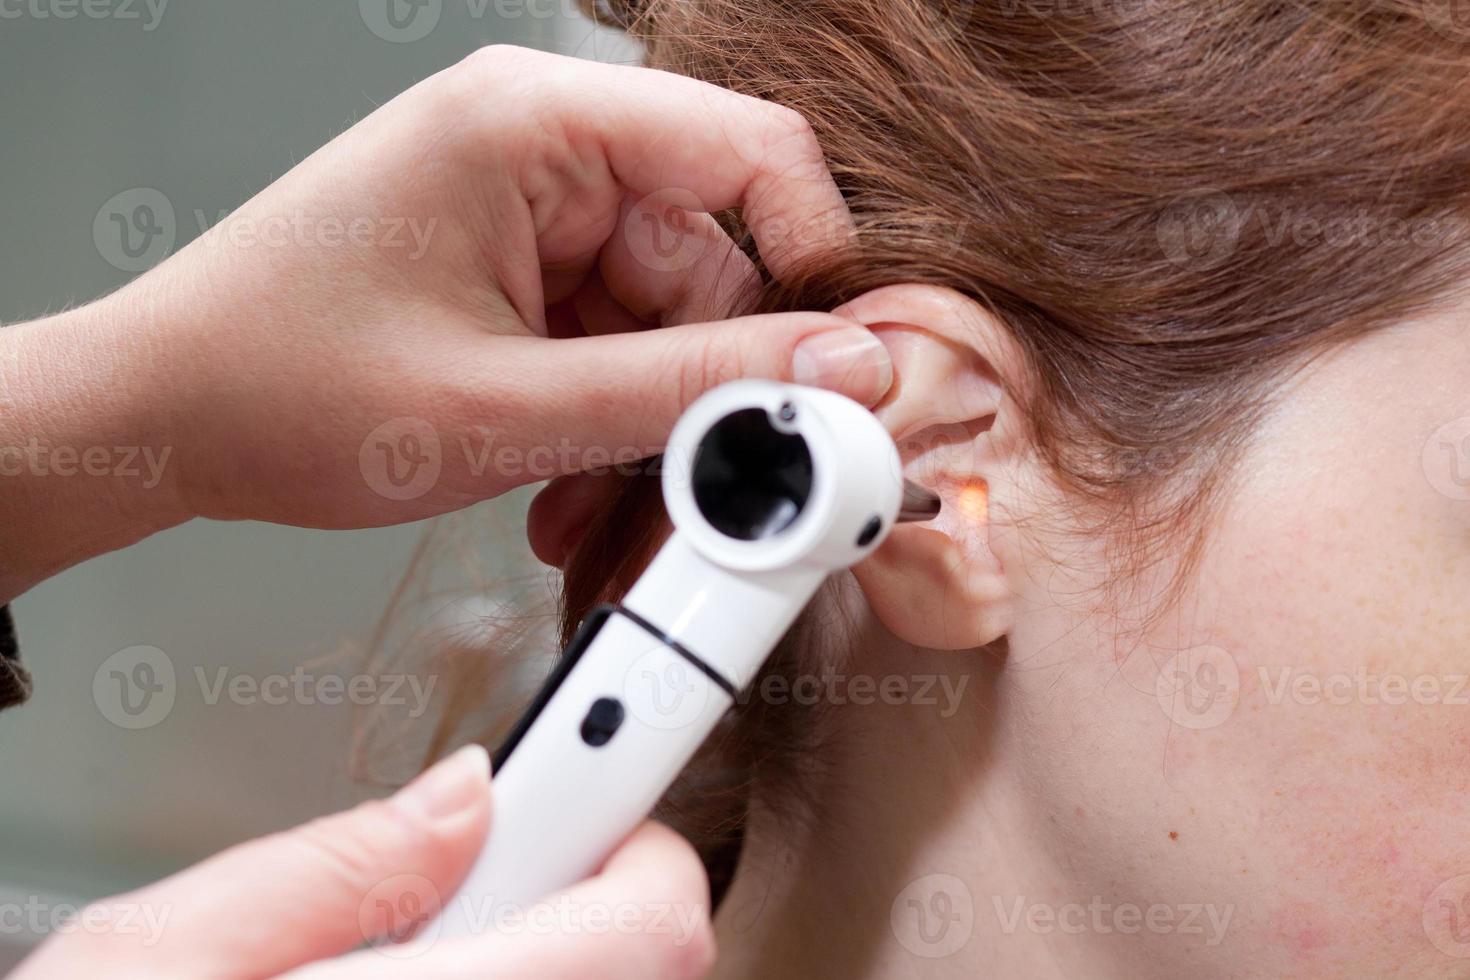 öronundersökning med otoskop foto